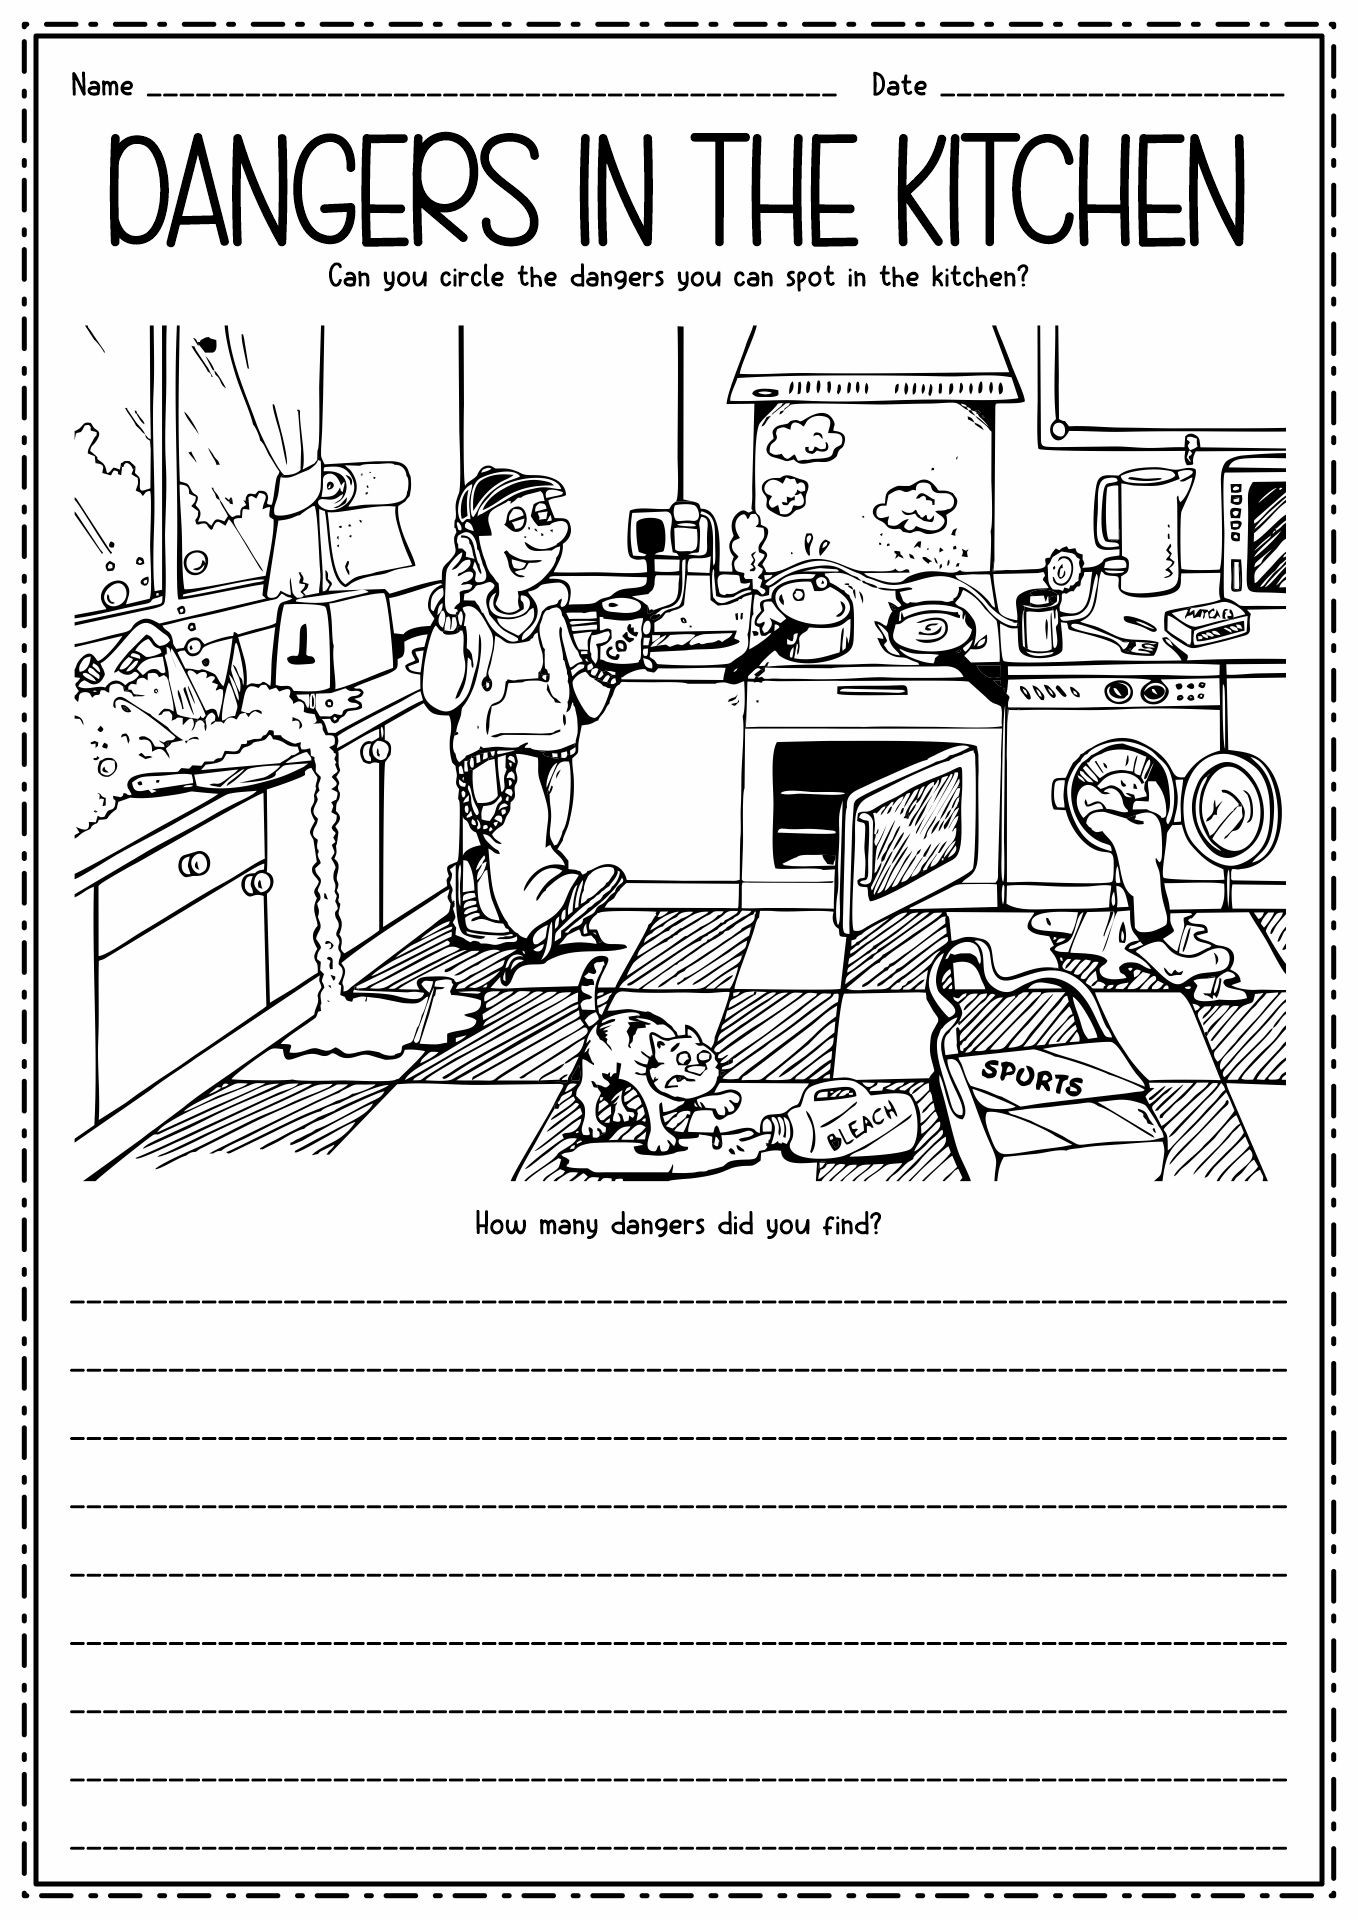 9-best-images-of-kitchen-utensils-worksheet-for-kids-kitchen-coloring